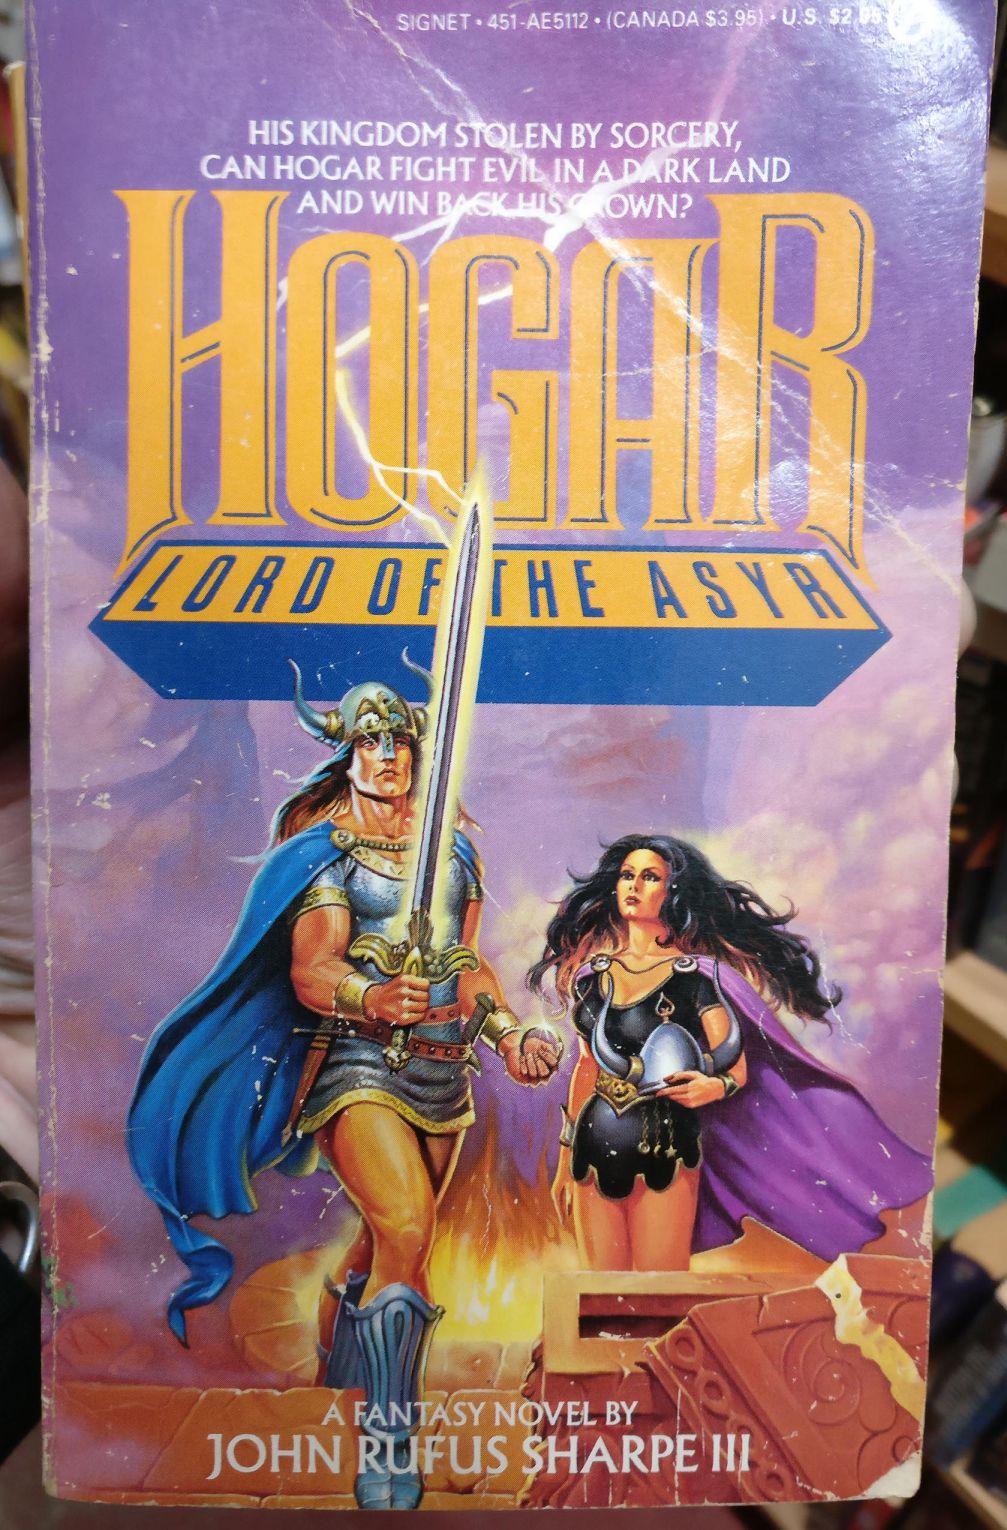 Hogar! Lord of the Ass